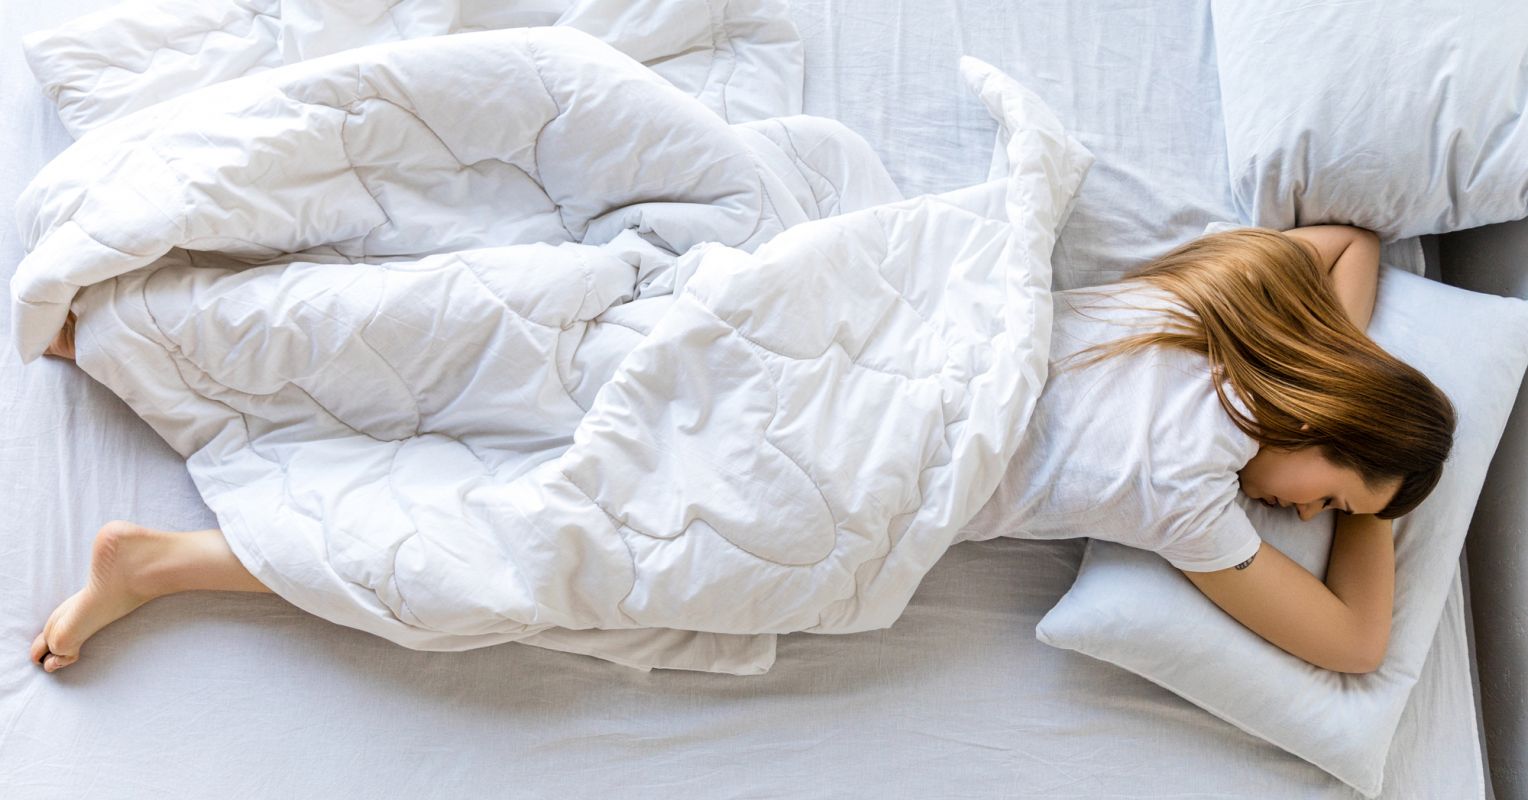 Oversleeping: Bad for Your Health?